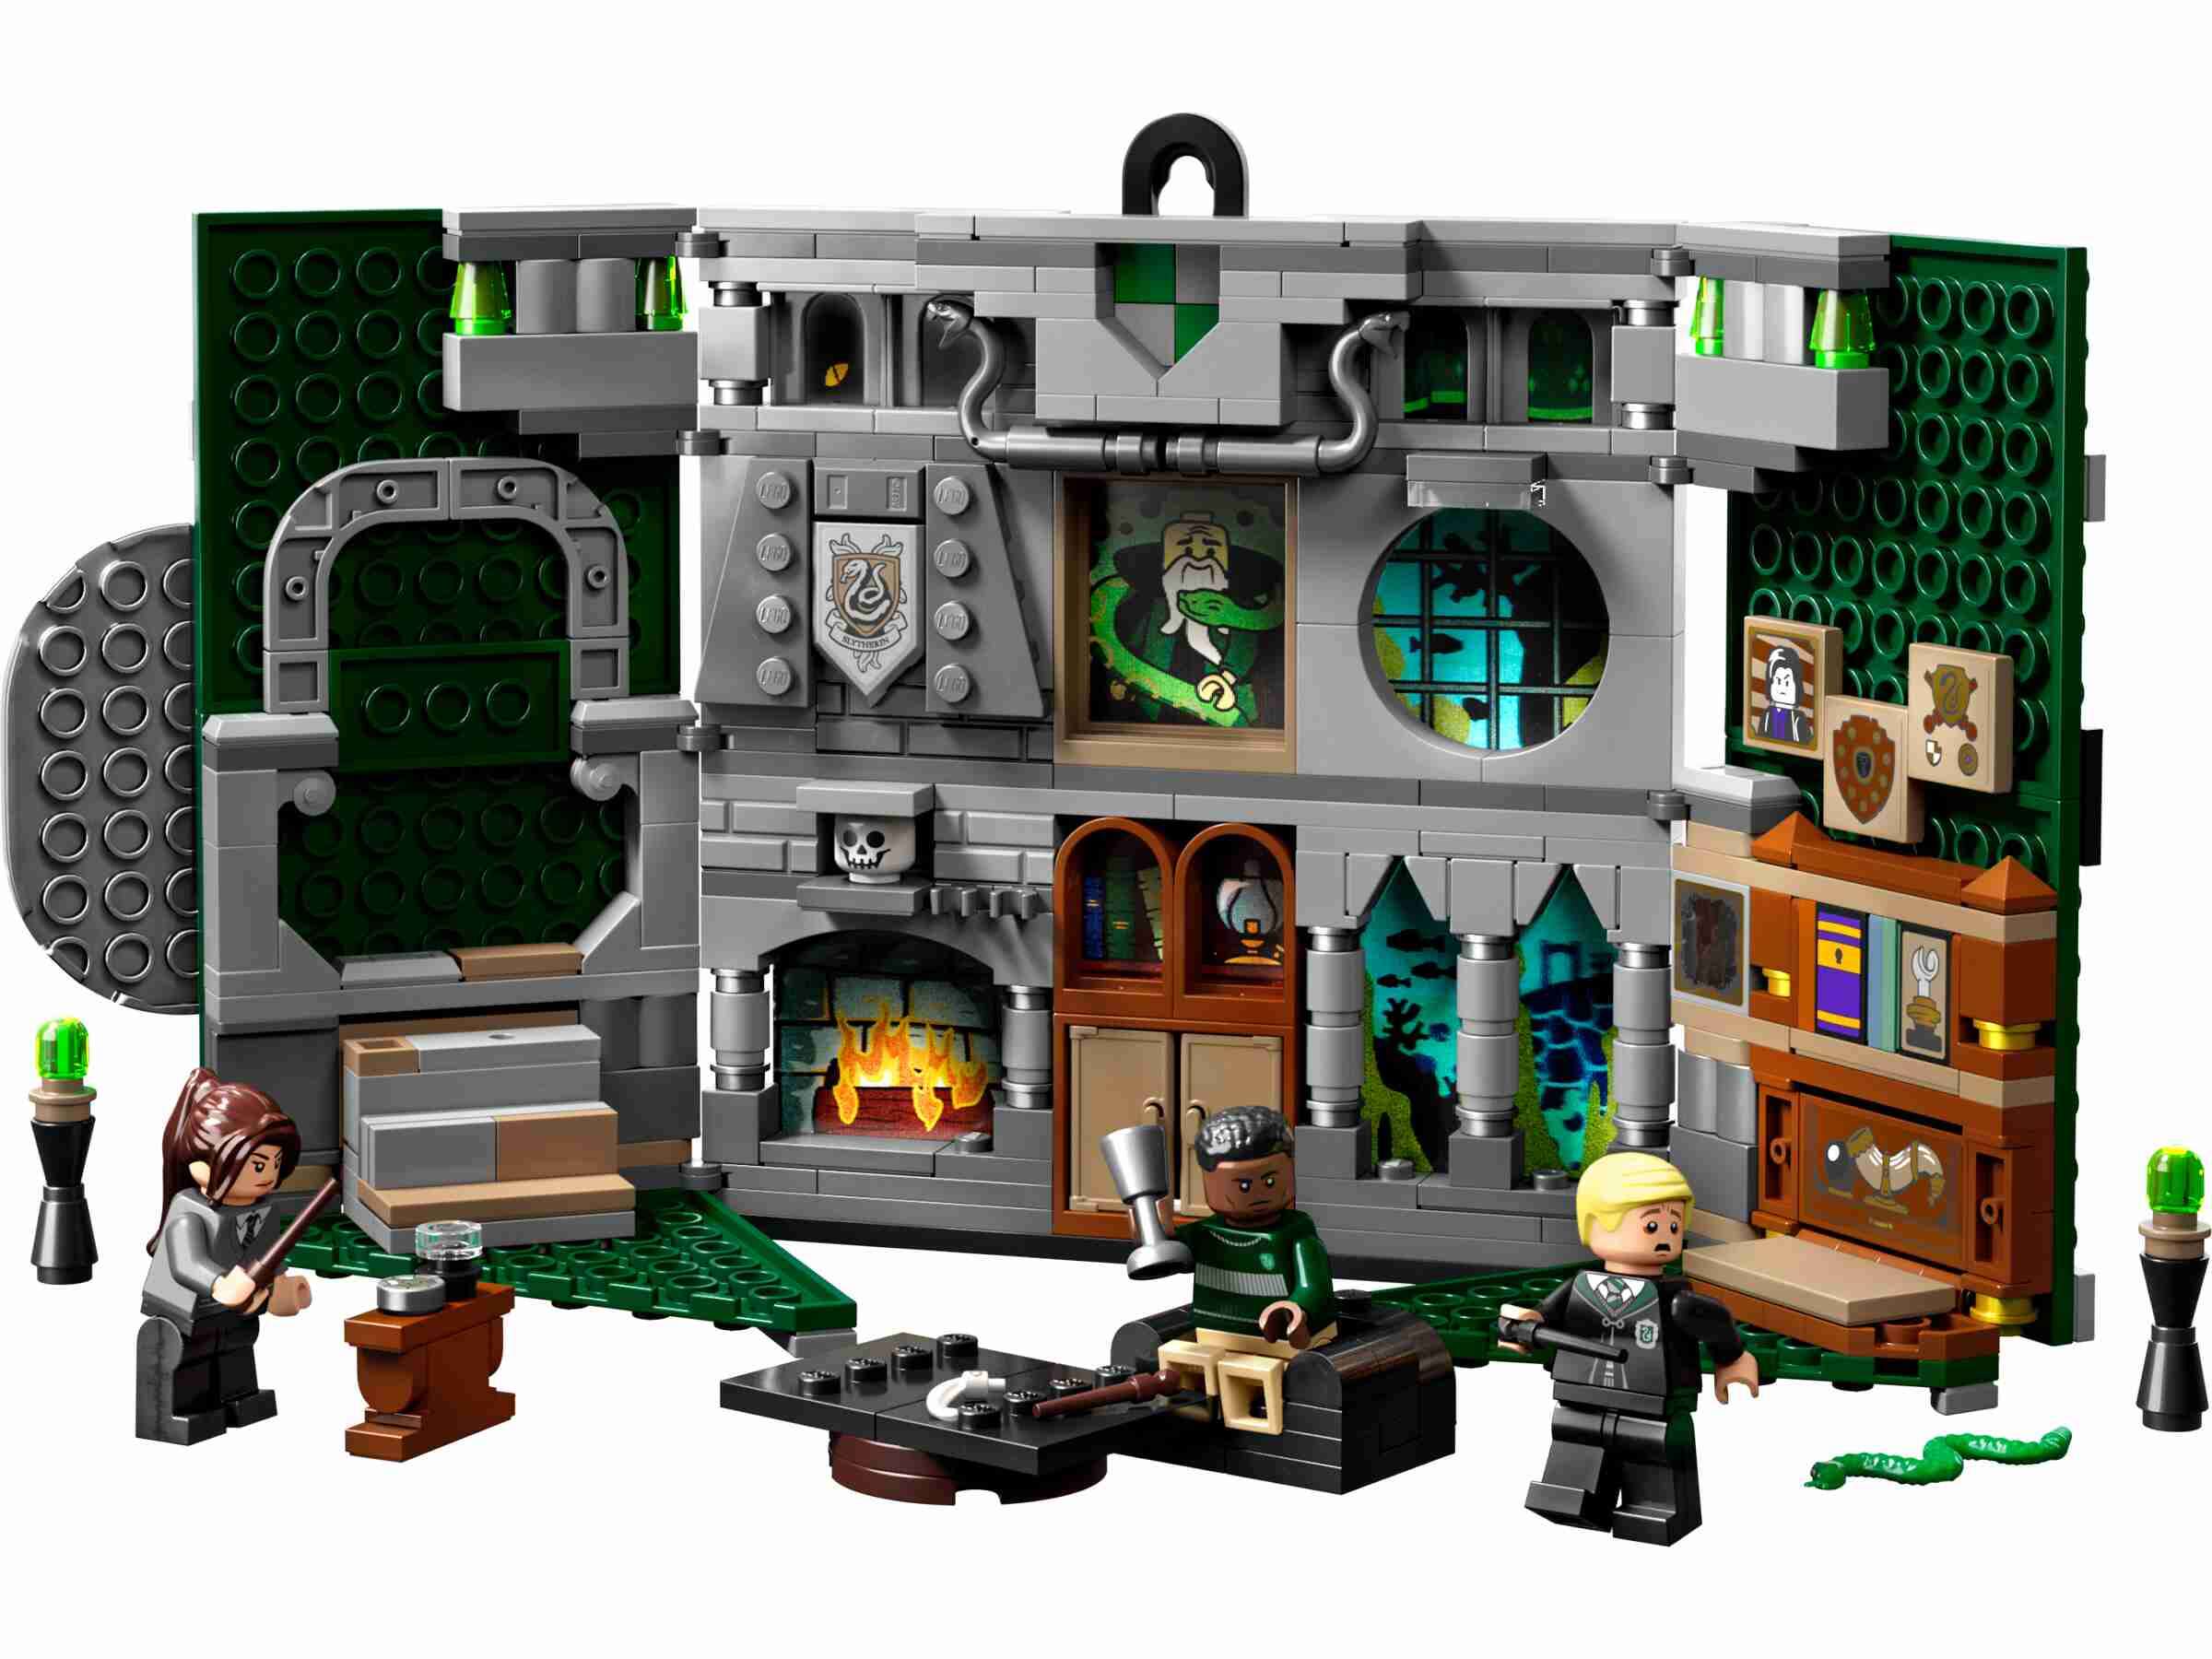 LEGO 76410 Harry Potter Hausbanner Slytherin, 3 Bewohner von Slytherin